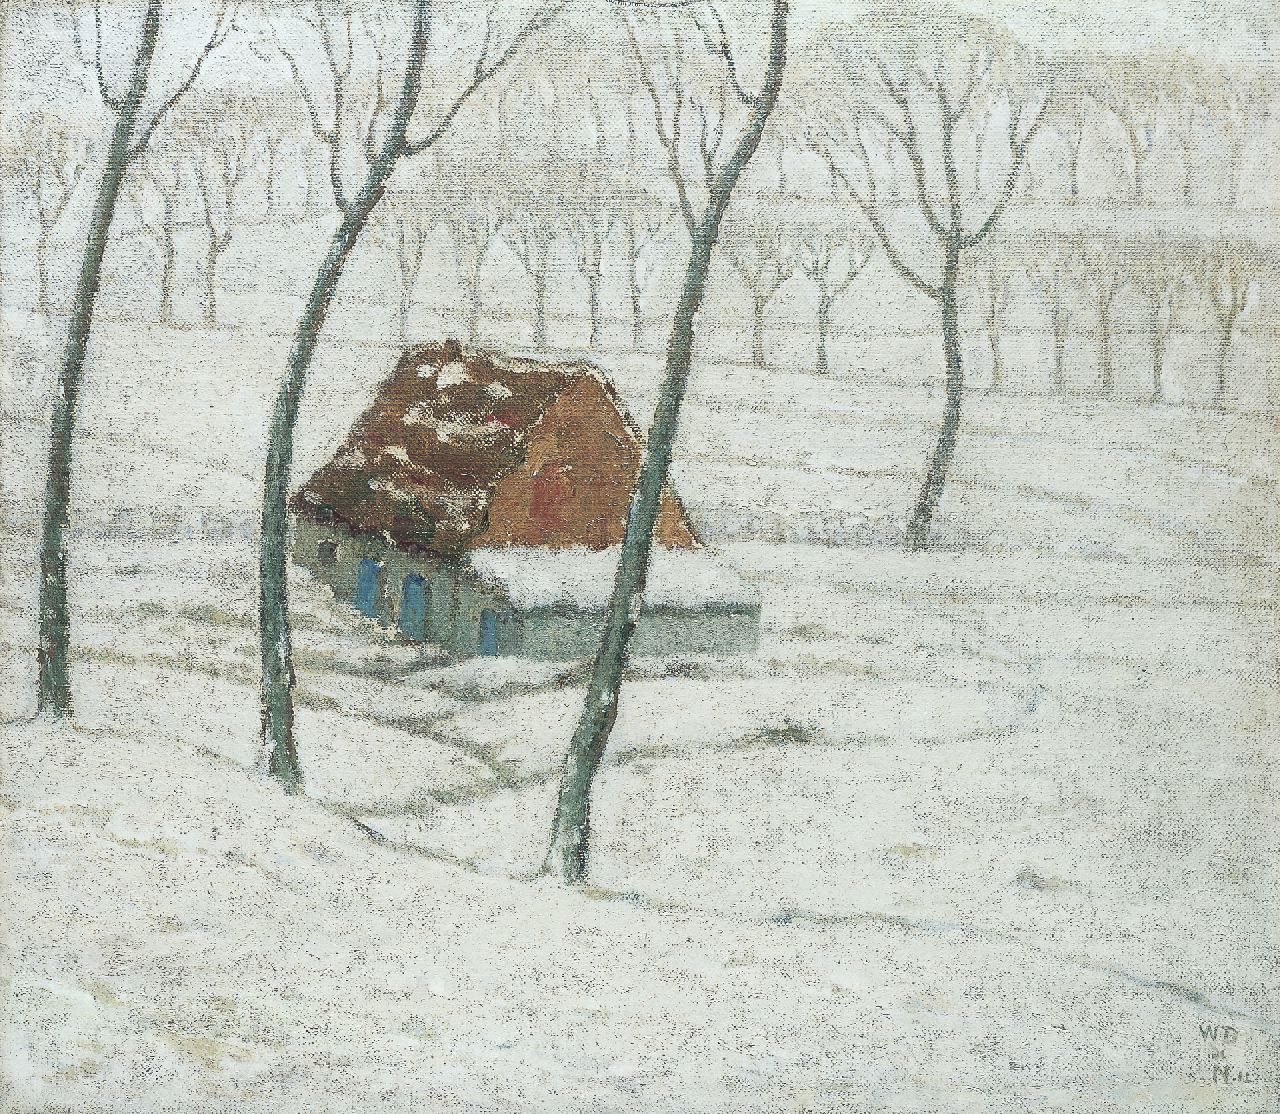 Degouve de Nuncques W.  | William Degouve de Nuncques, A farm in a winter landscape, oil on canvas 49.0 x 56.0 cm, signed l.r. with monogram and dated '12